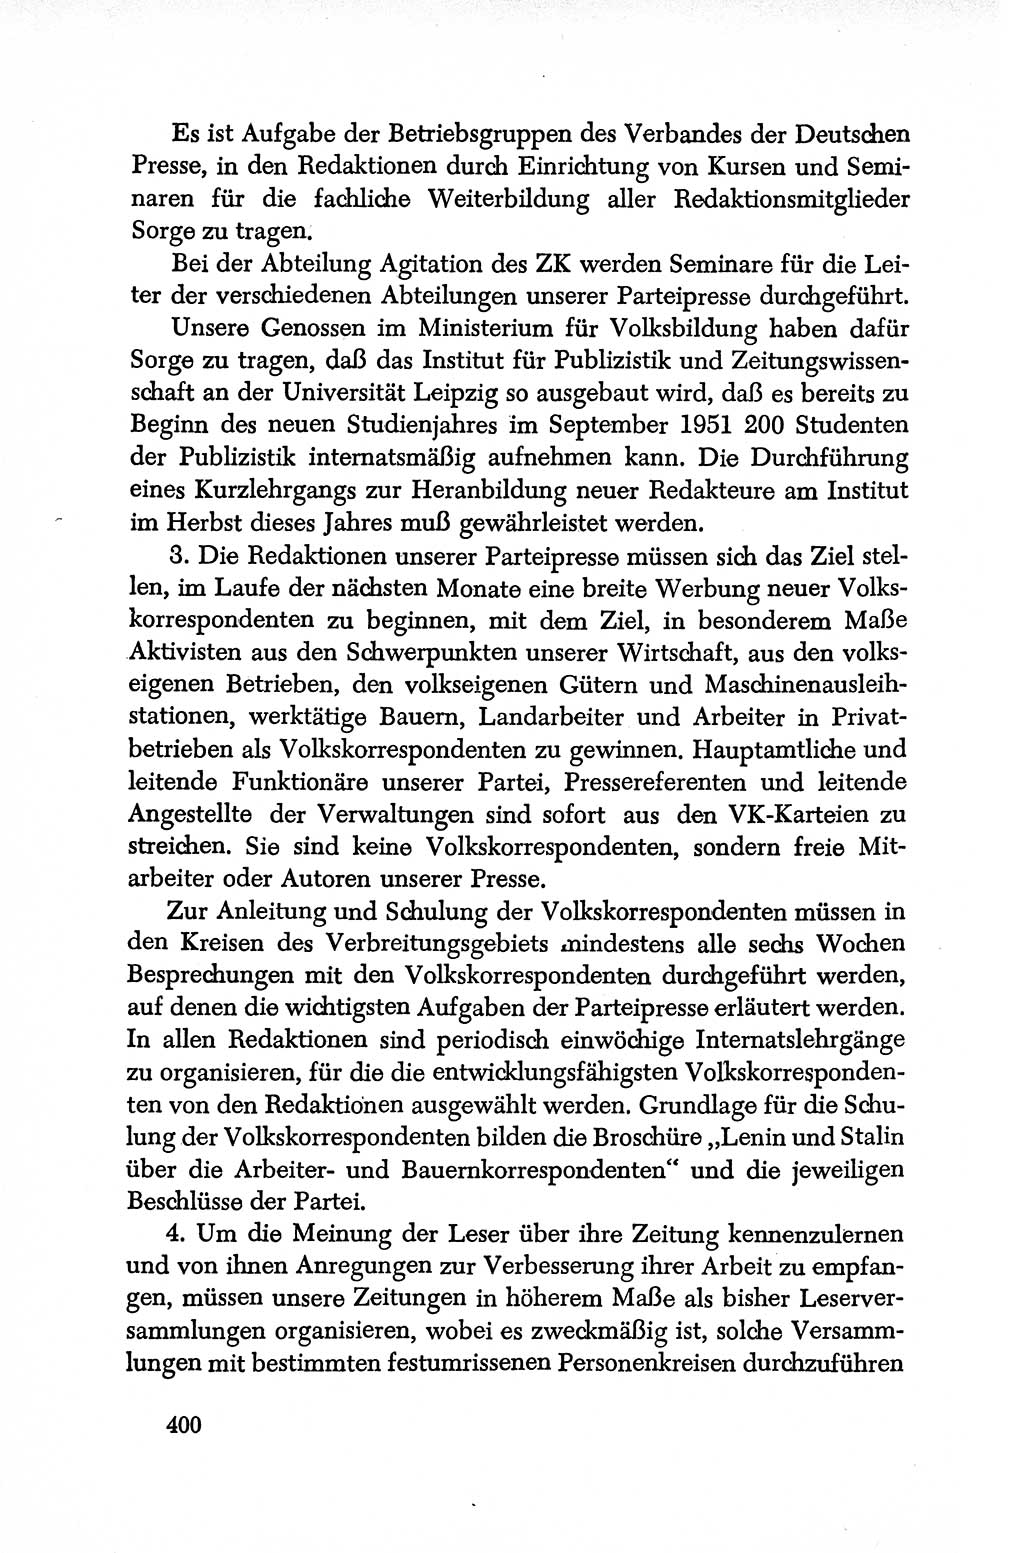 Dokumente der Sozialistischen Einheitspartei Deutschlands (SED) [Deutsche Demokratische Republik (DDR)] 1950-1952, Seite 400 (Dok. SED DDR 1950-1952, S. 400)